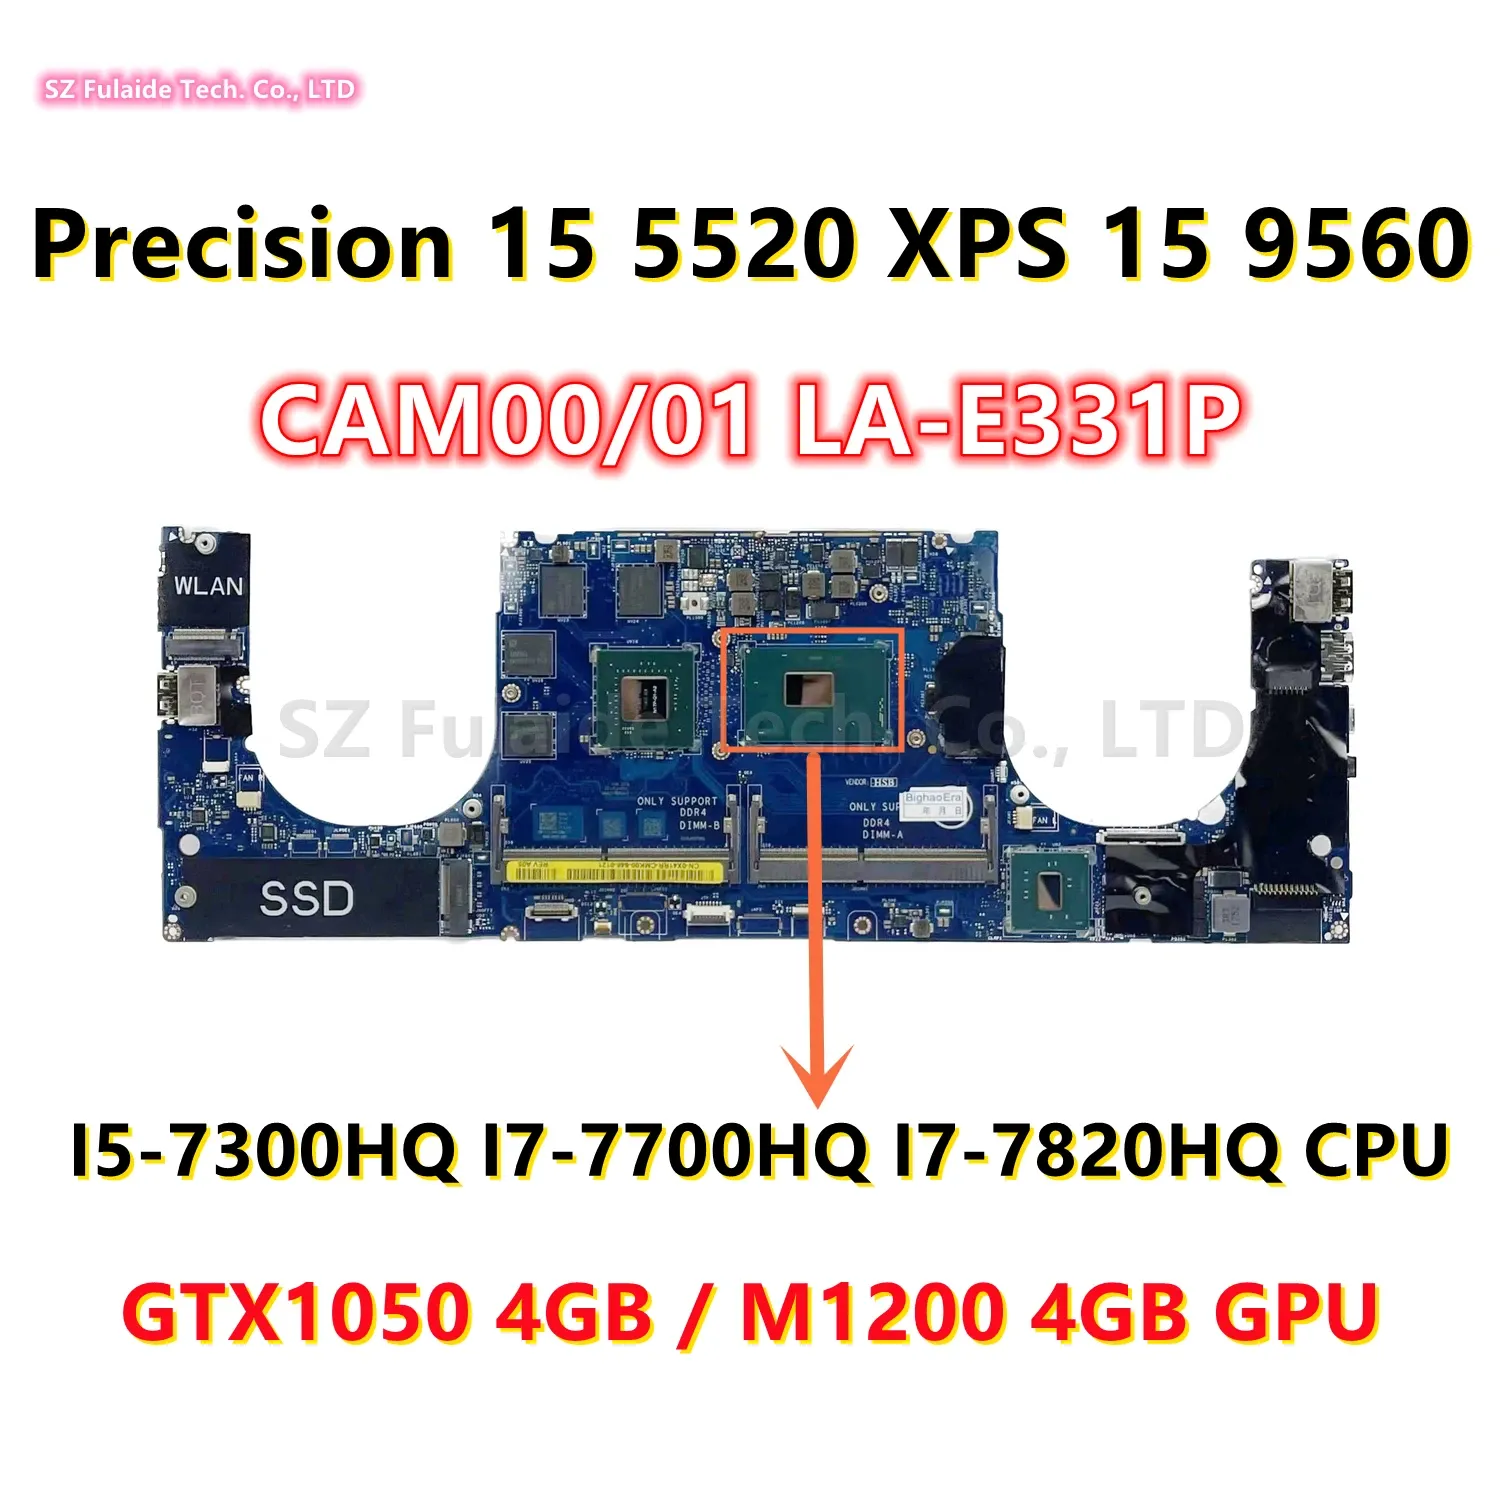 マザーボードCAM00/01 LAE331P DELL PRECISION 15 5520 P56F XPS 15 9560ラップトップマザーボードI57300HQ I77700HQ I77820HQ CPU GTX1050 GPU